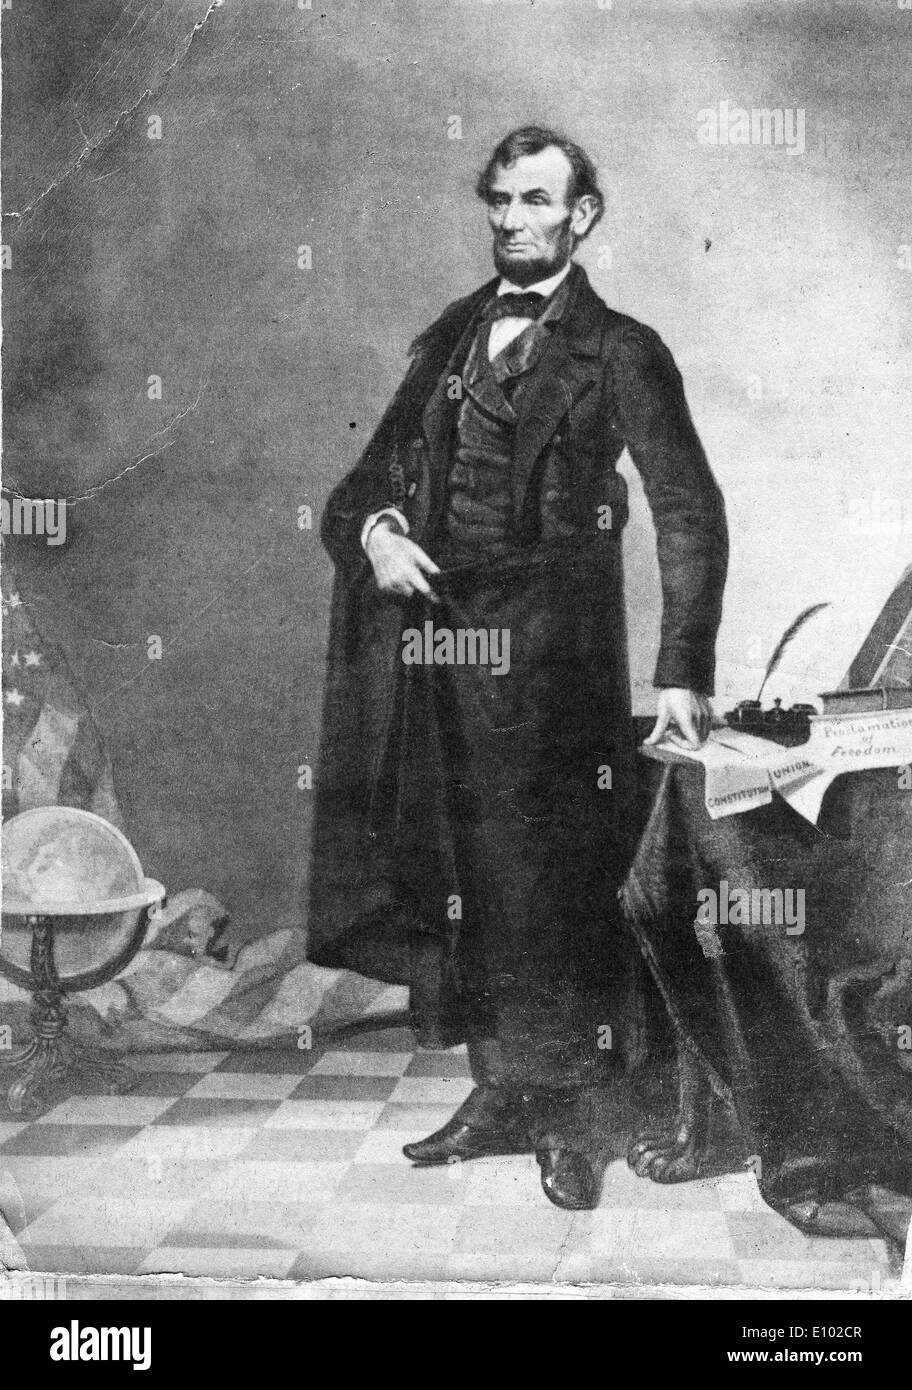 ABRAHAM LINCOLN (12 de febrero de 1809 - 15 de abril de 1865) fue el 16º Presidente de los Estados Unidos. Foto de stock